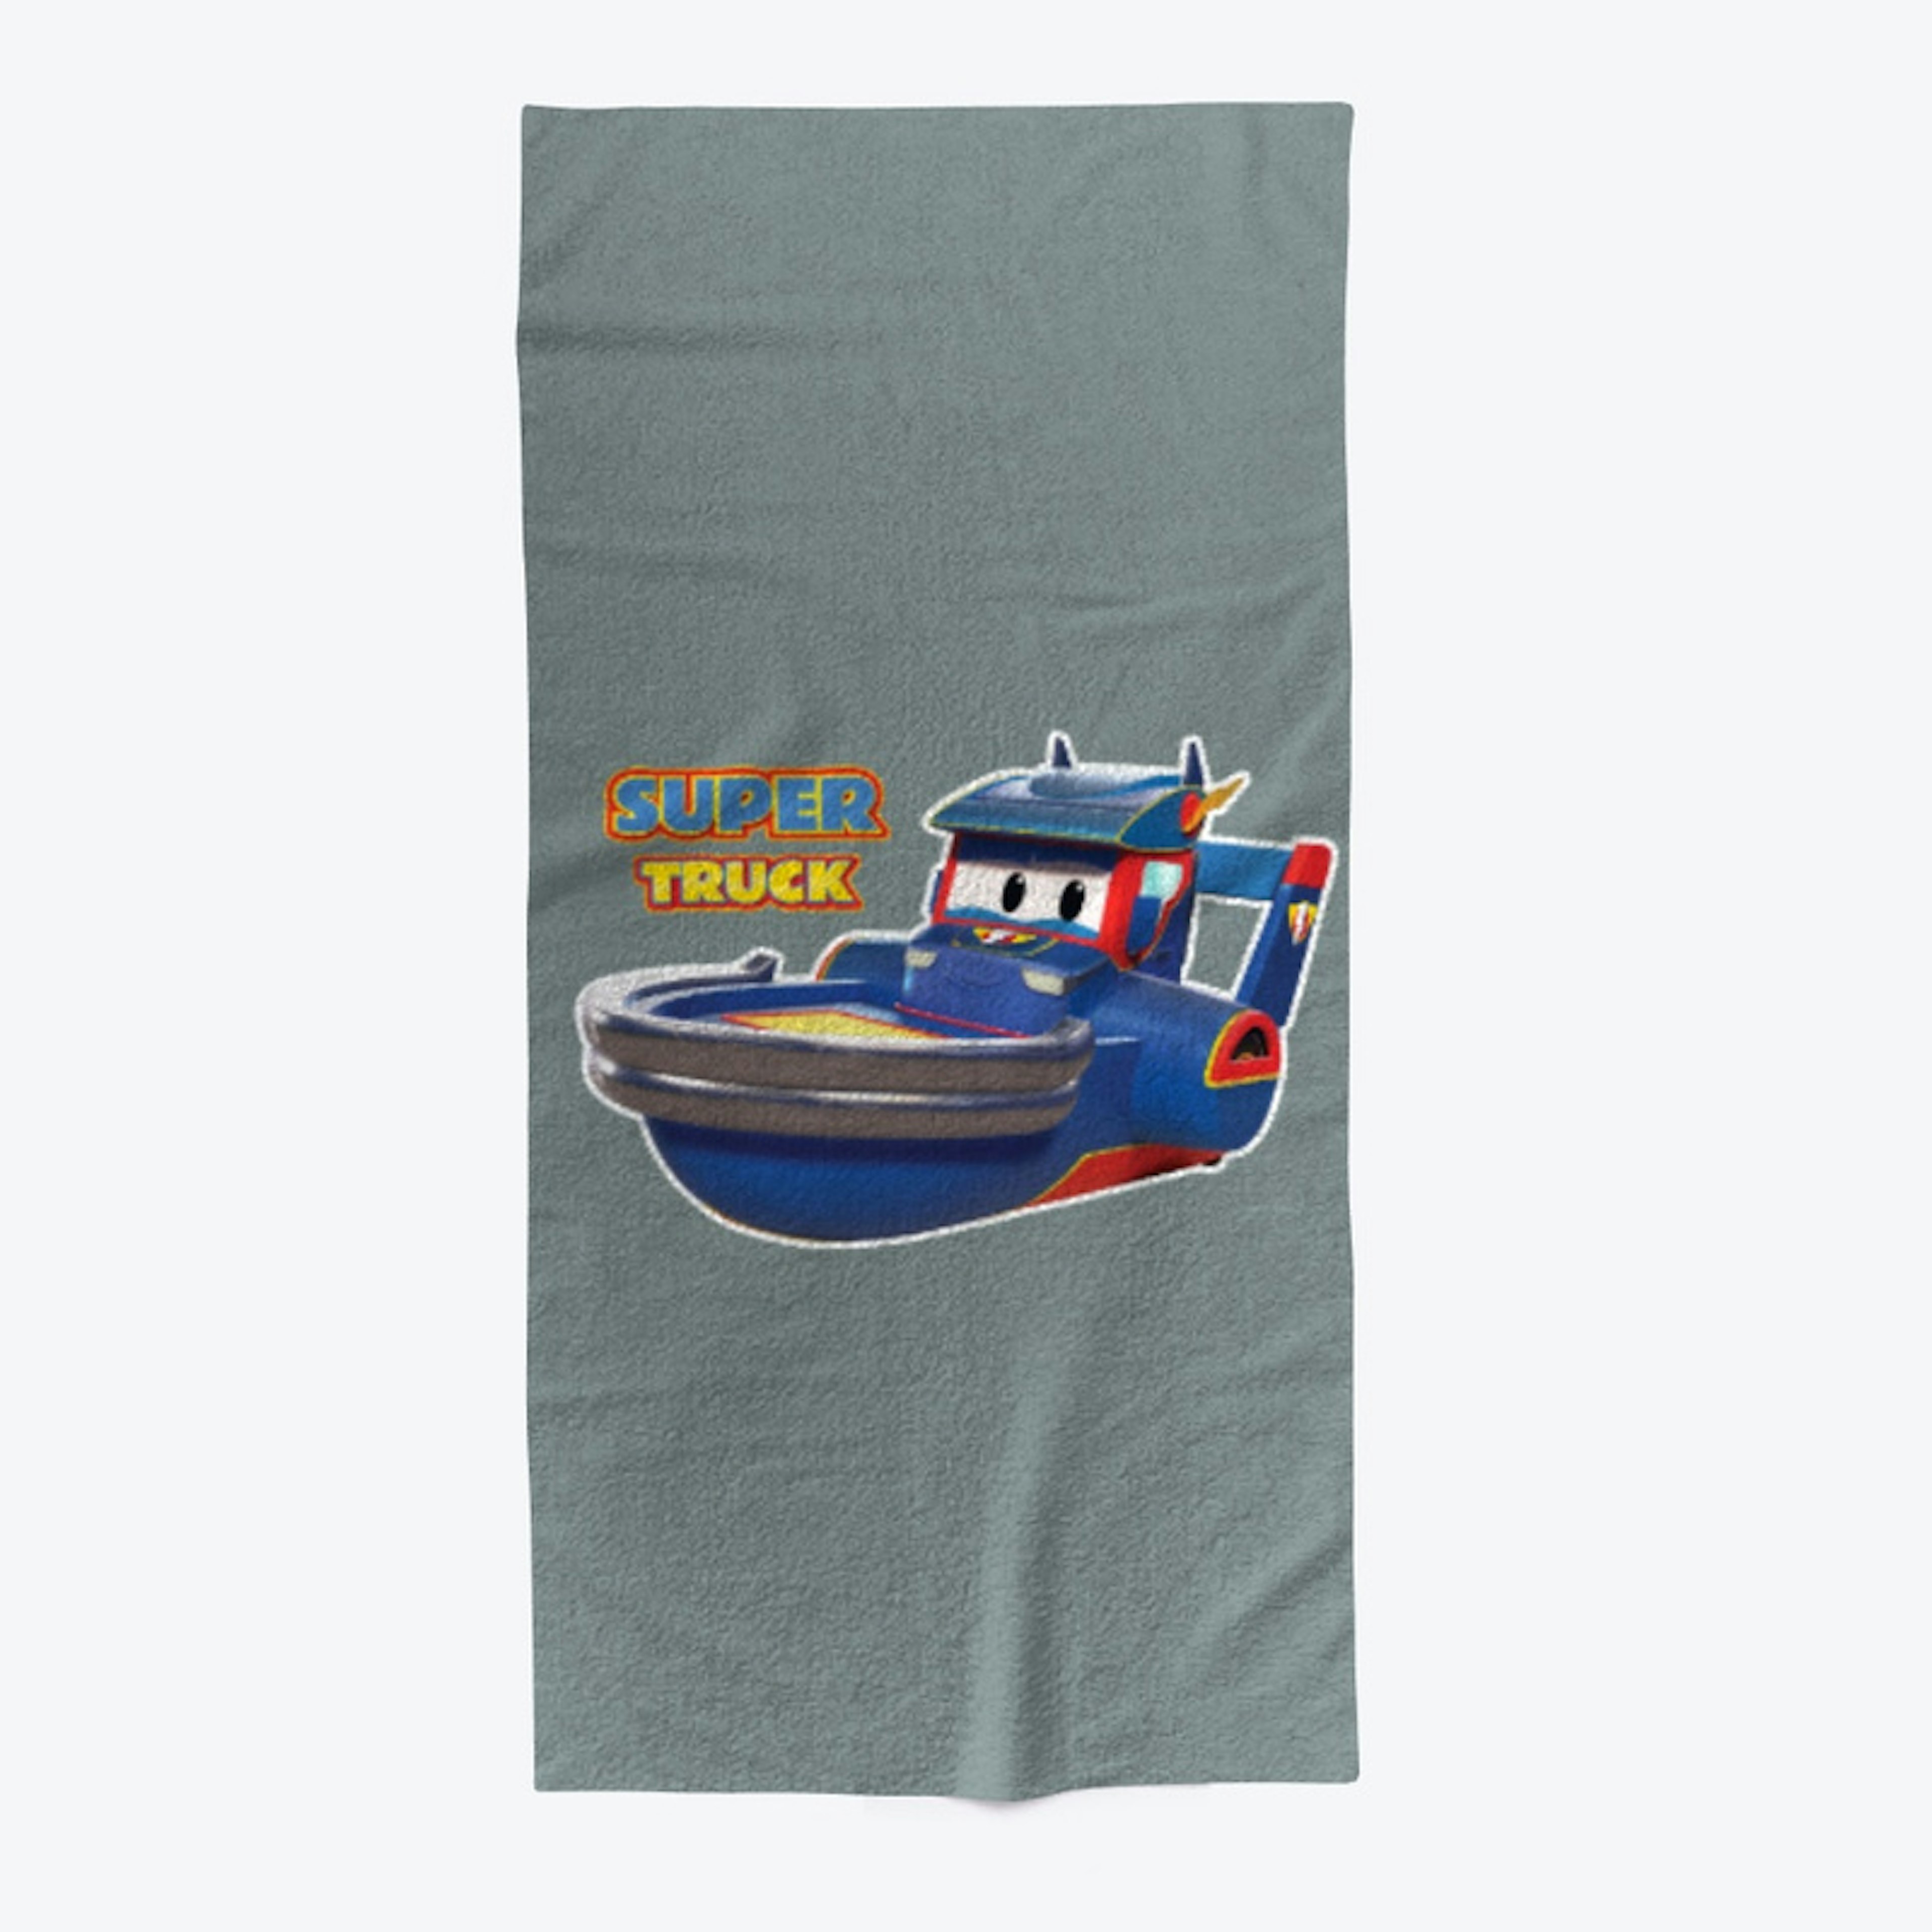 Super Truck - Boat  - Car City